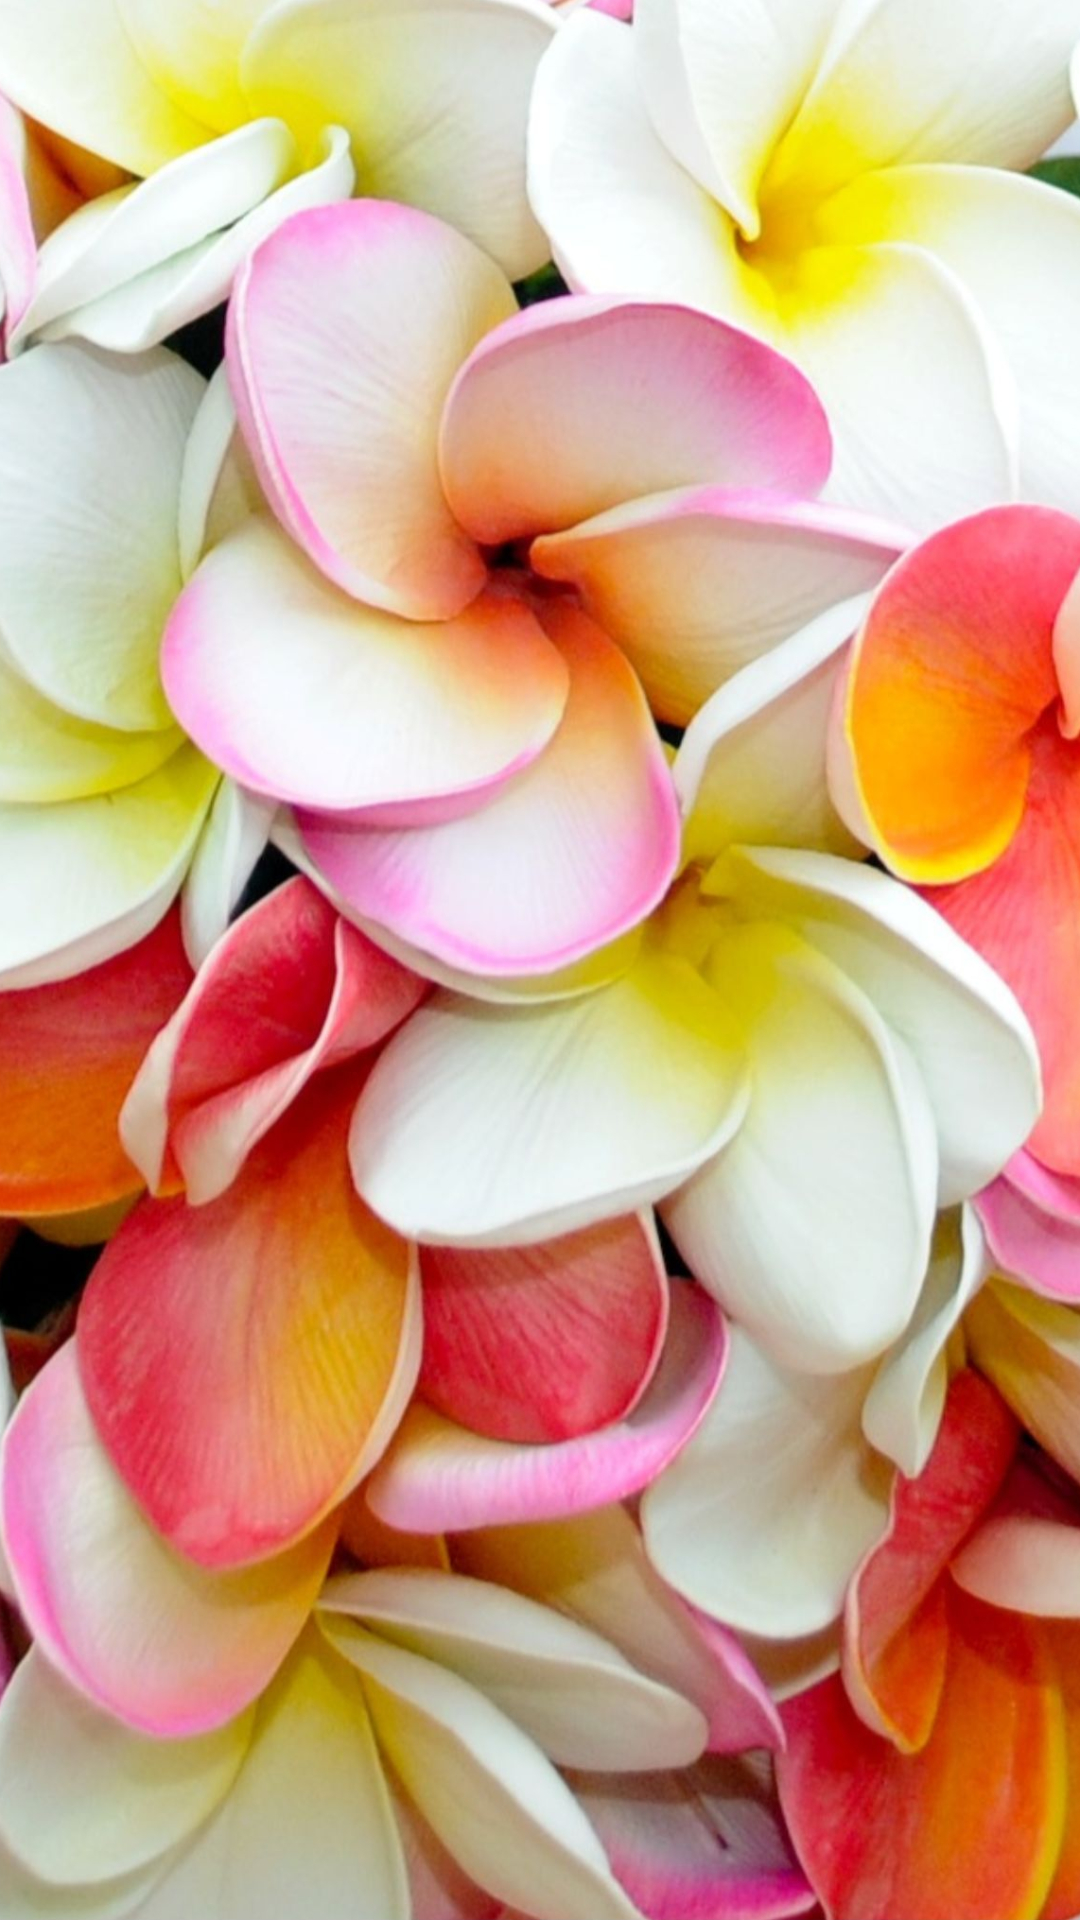 Download mobile wallpaper Flowers, Flower, Earth, Plumeria, White Flower, Frangipani for free.